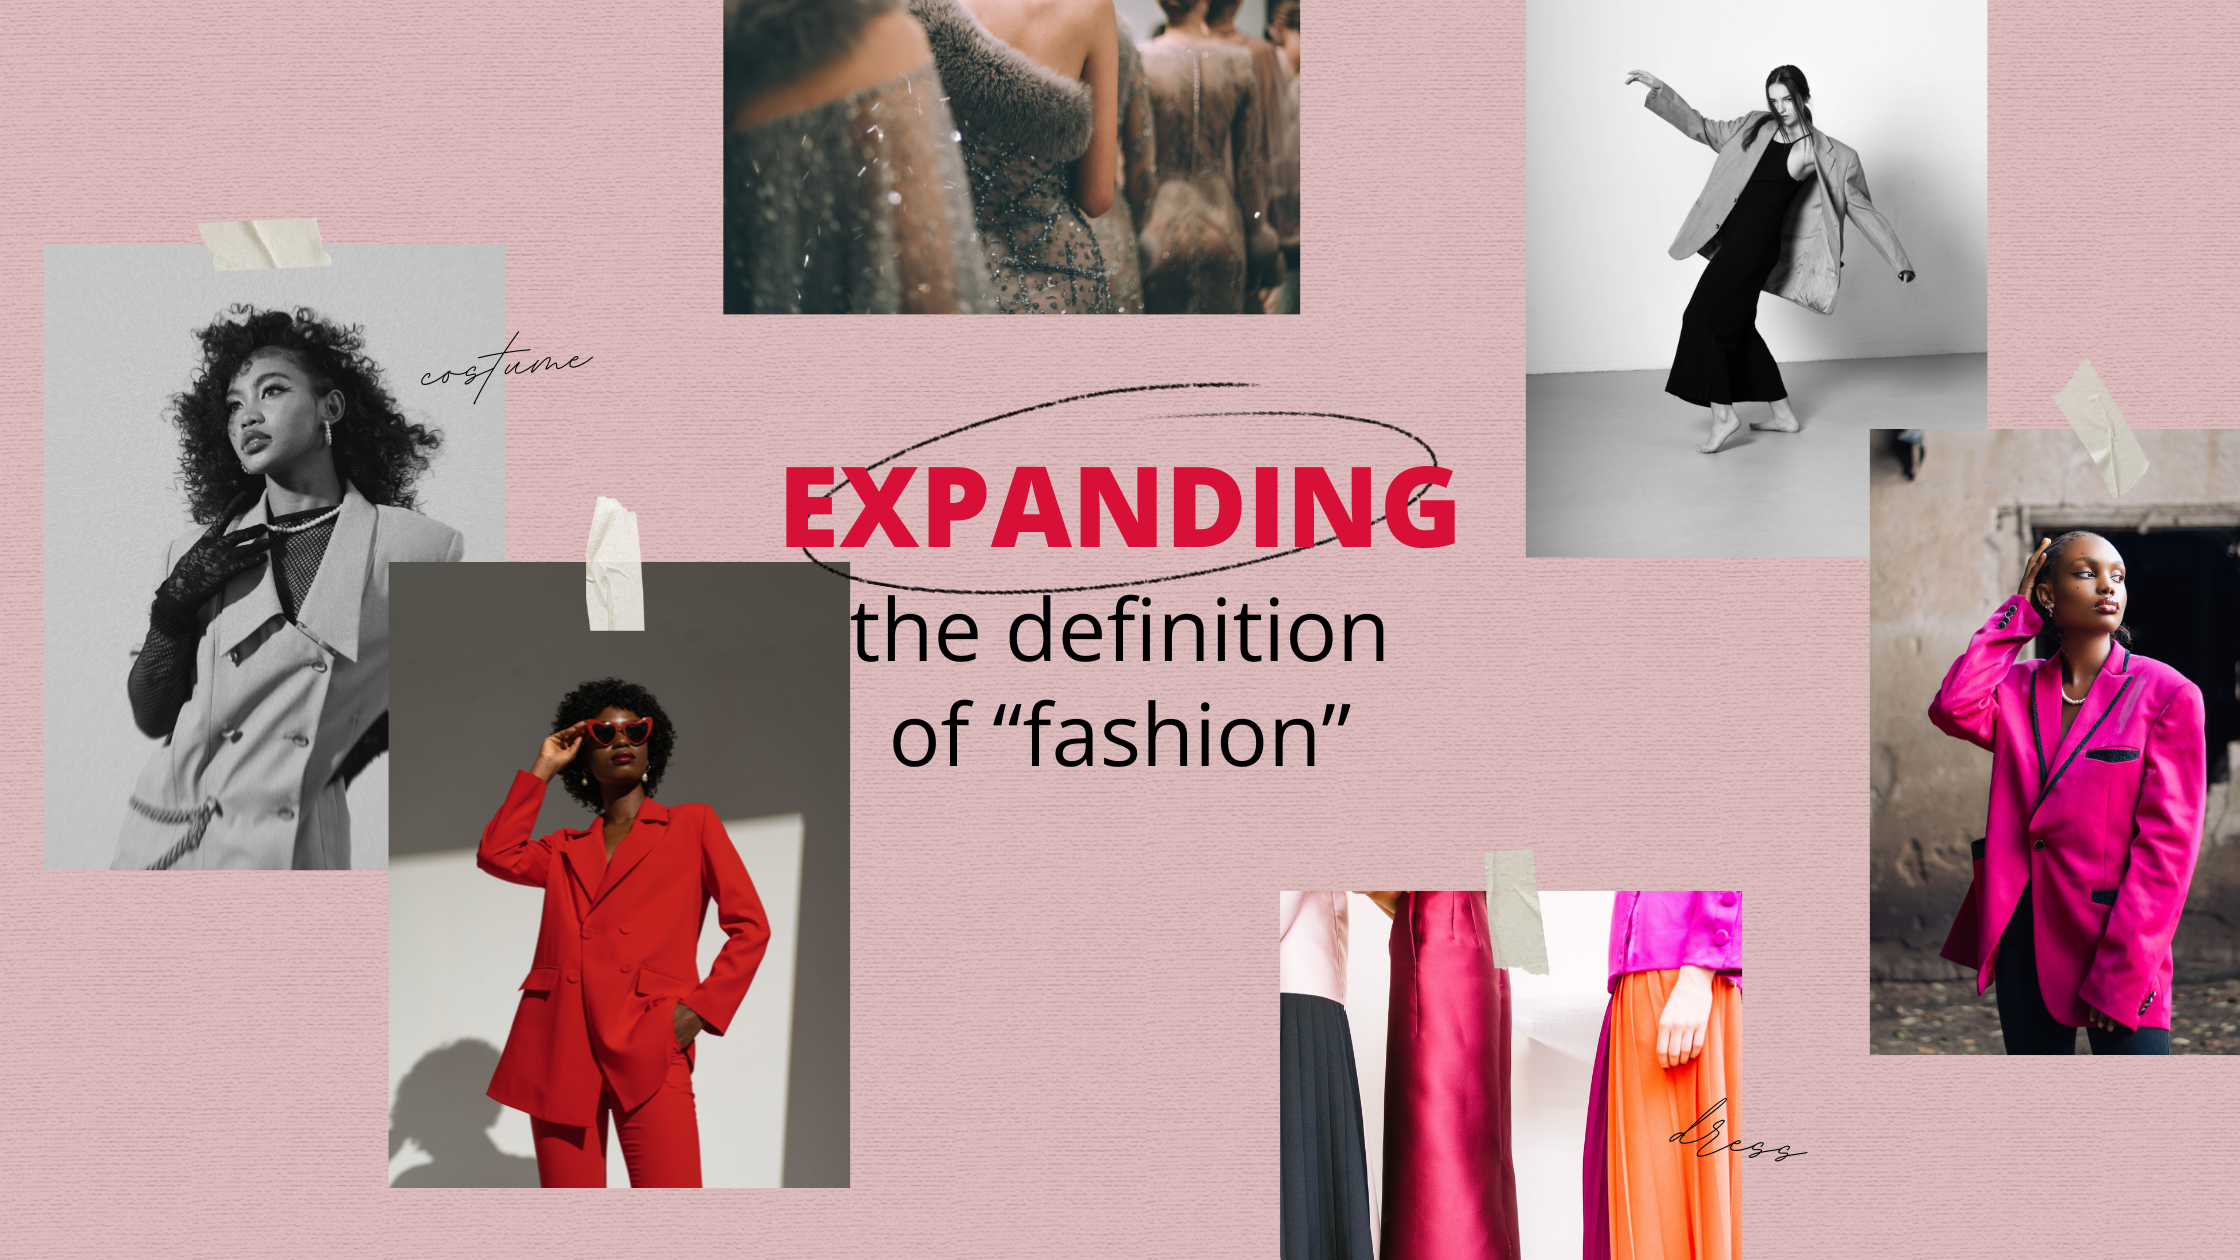 Ideas sueltas: Sobre la resistencia frente a definiciones expansivas de la moda